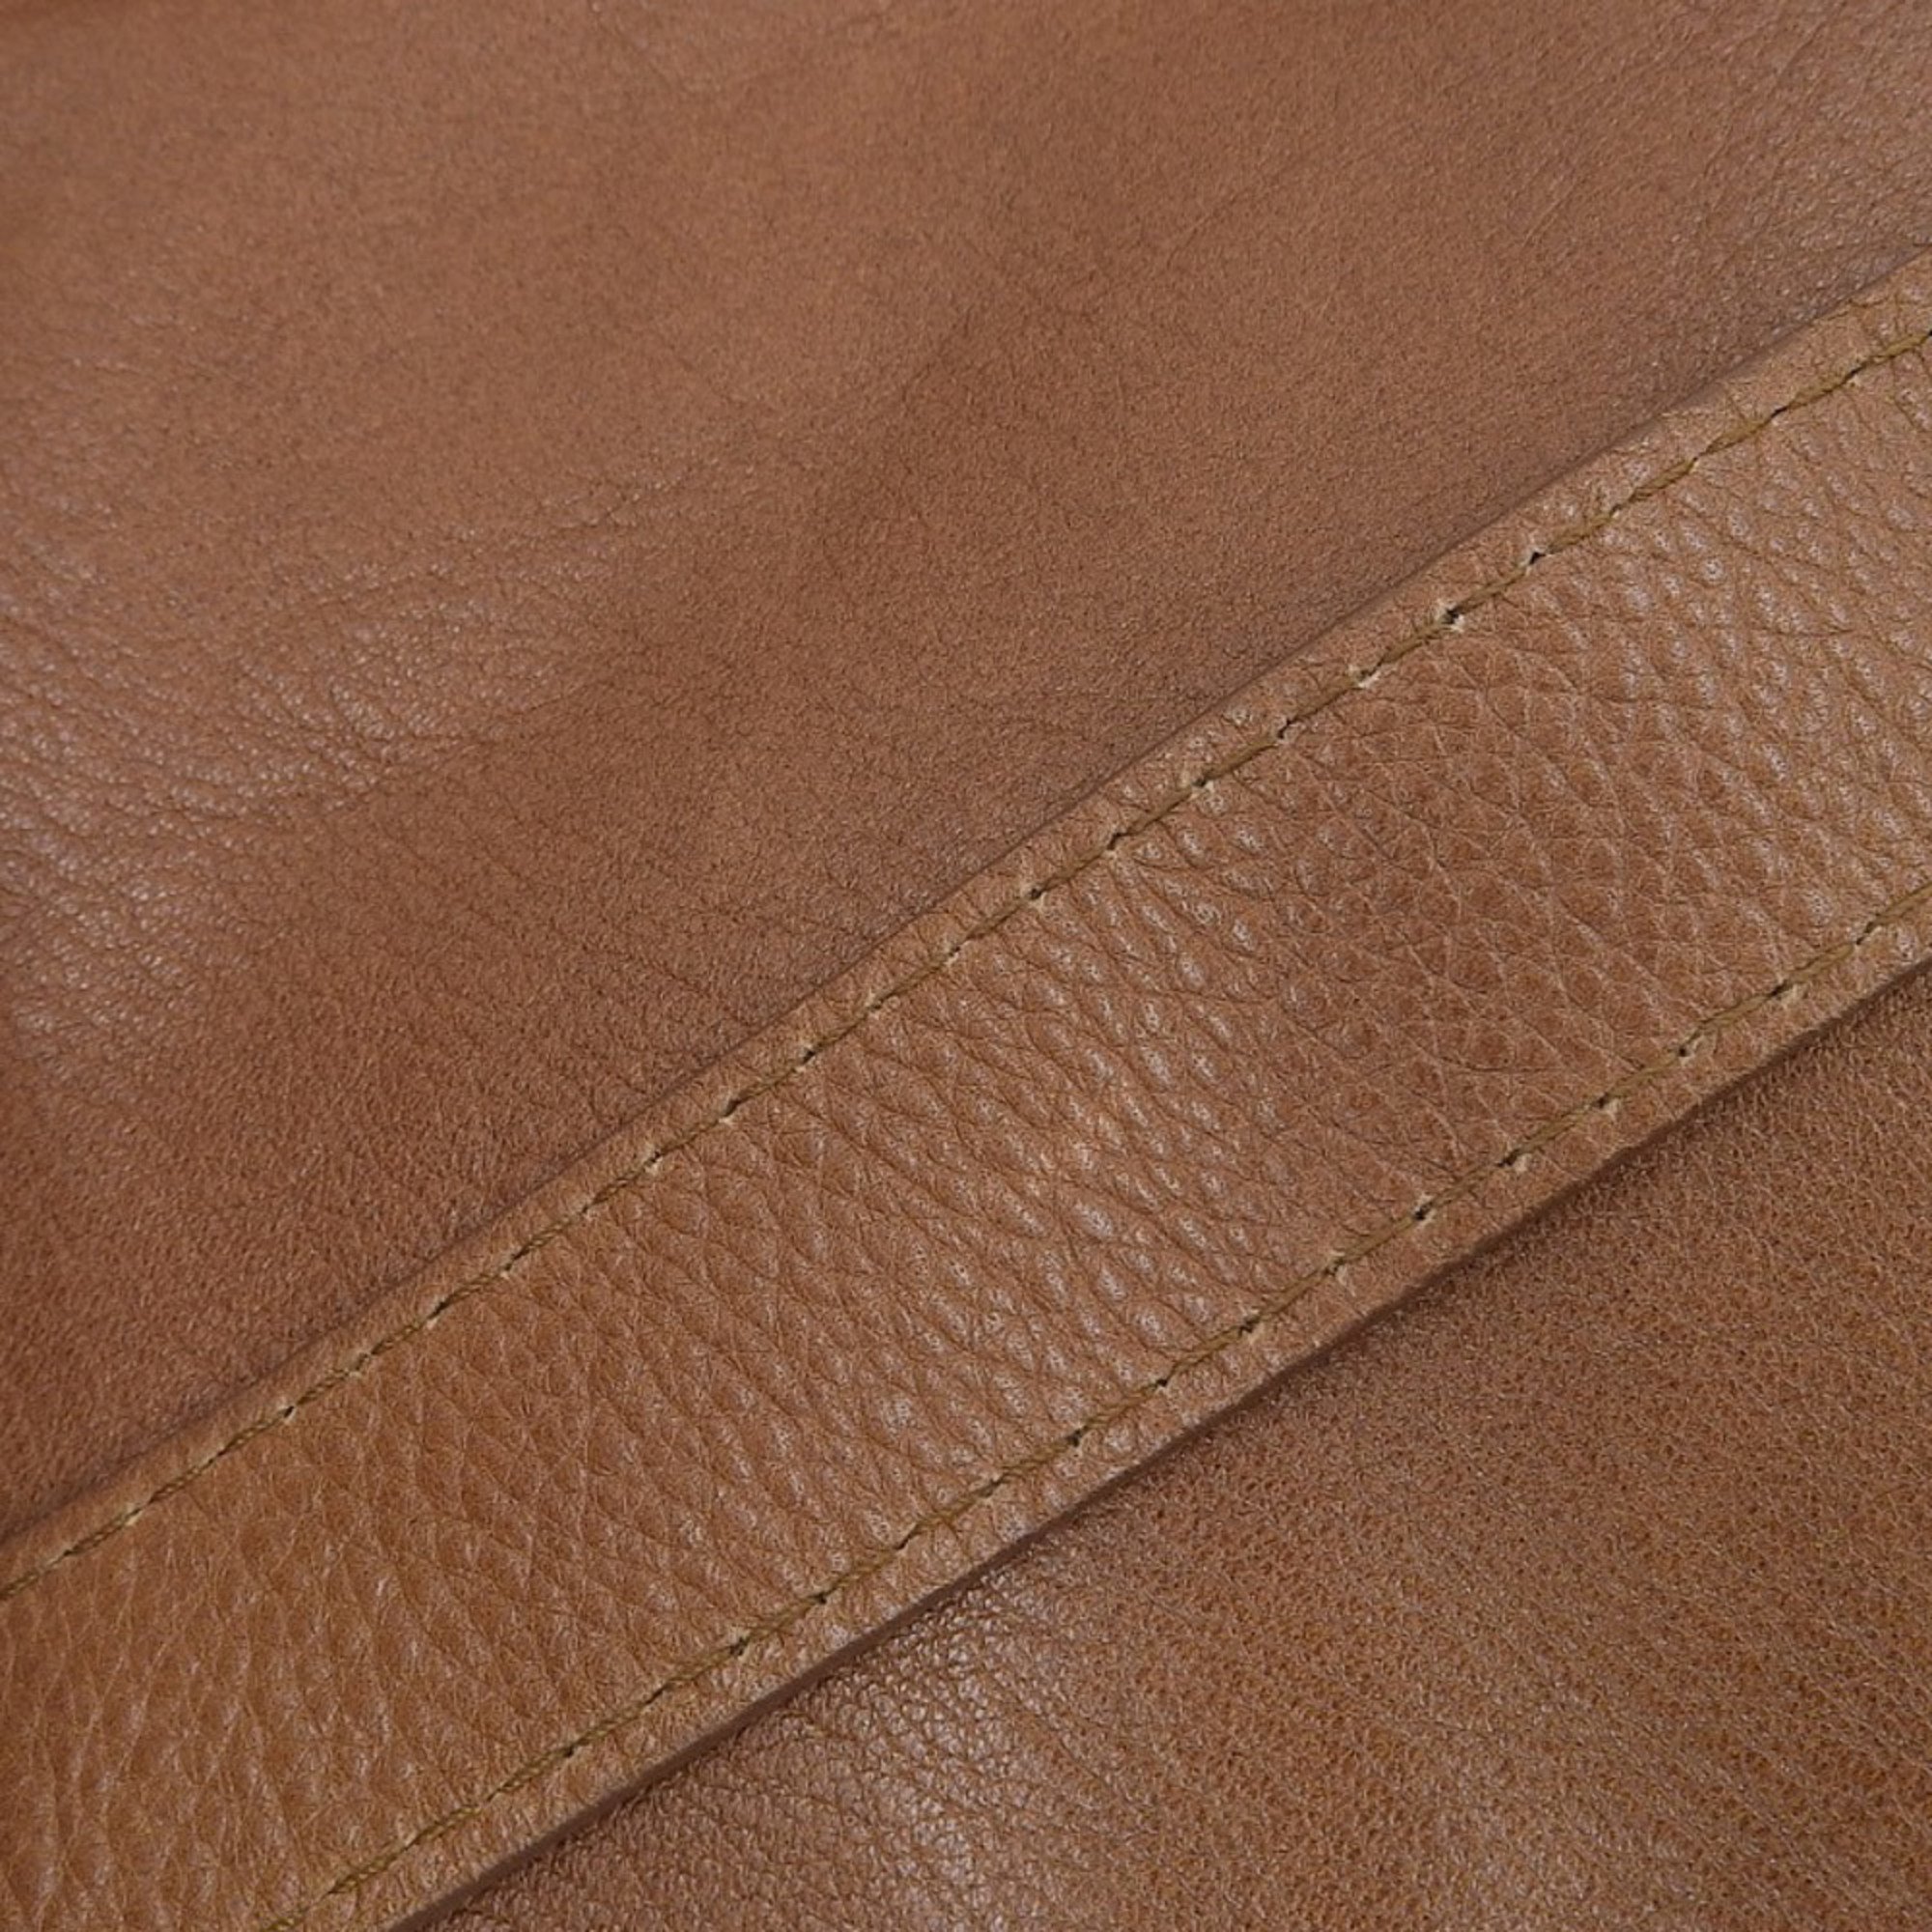 Yves Saint Laurent YSL Shoulder Bag Leather Brown